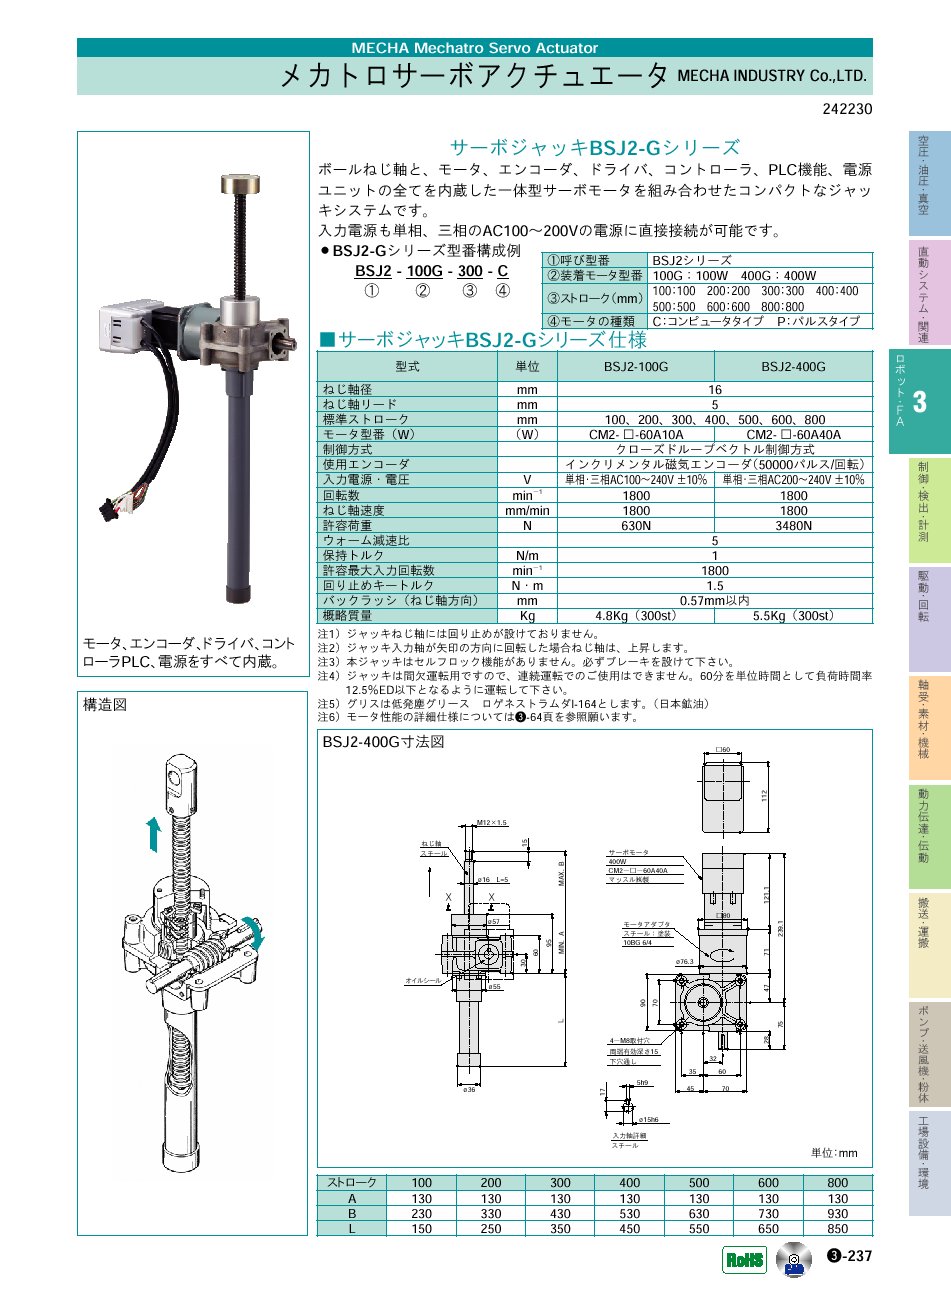 MECHA_INDUSTRY_Co.,LTD.　サーボジャッキBSJ2-Gシリーズ　メカトロサーボアクチュエータ　ロボット・ＦＡ機器　P03-237　価格